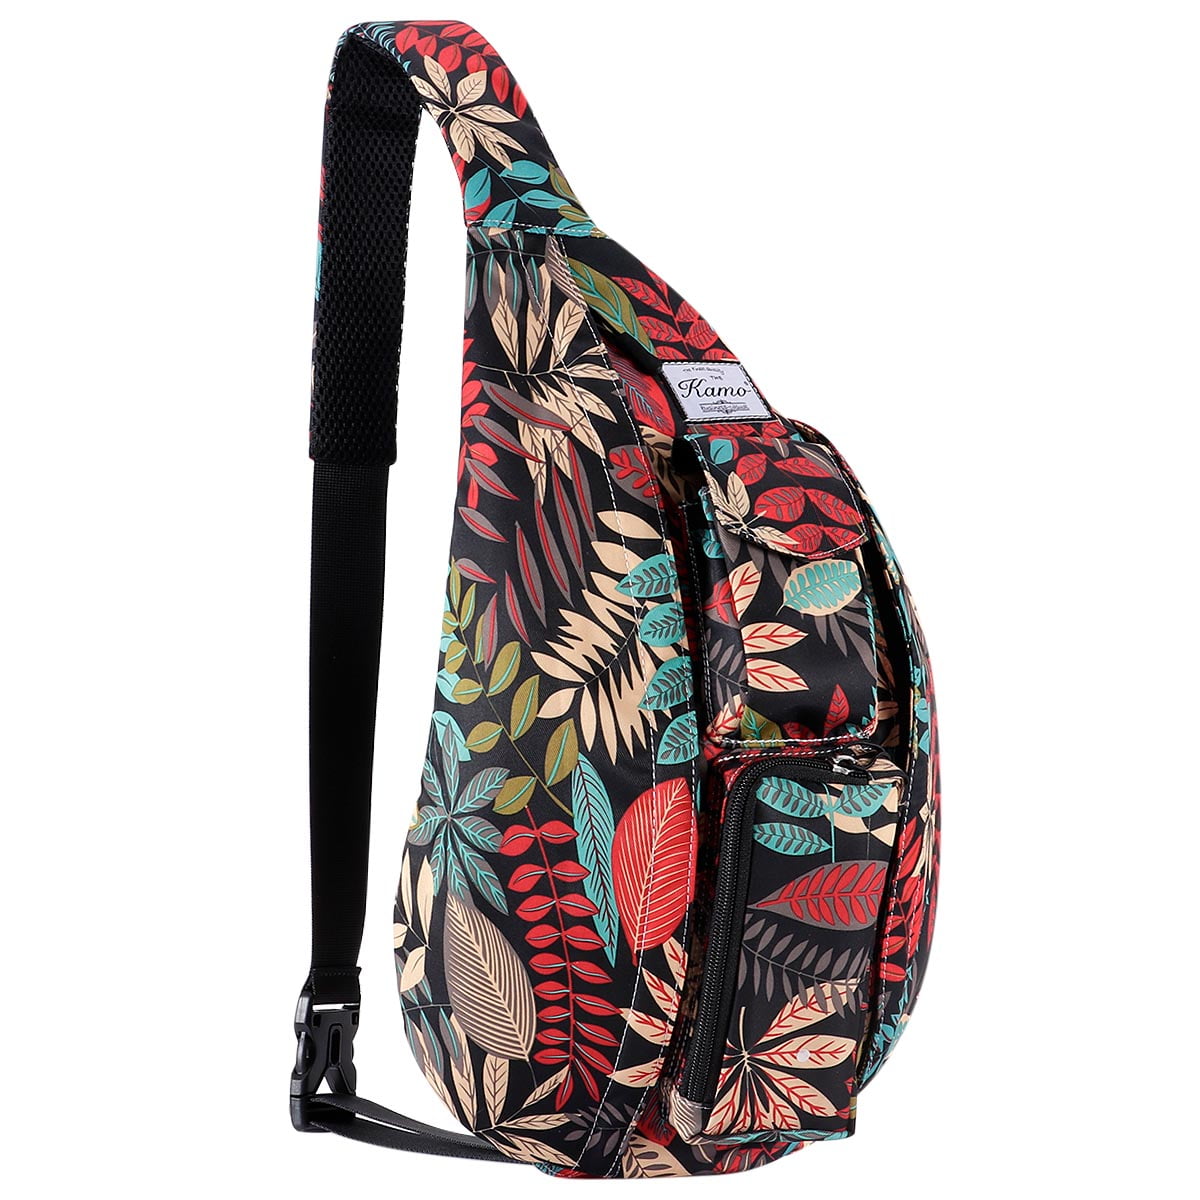 Sling Backpack - Rope Bag Crossbody Backpack Travel Multipurpose Daypacks for Men Women Lady ...